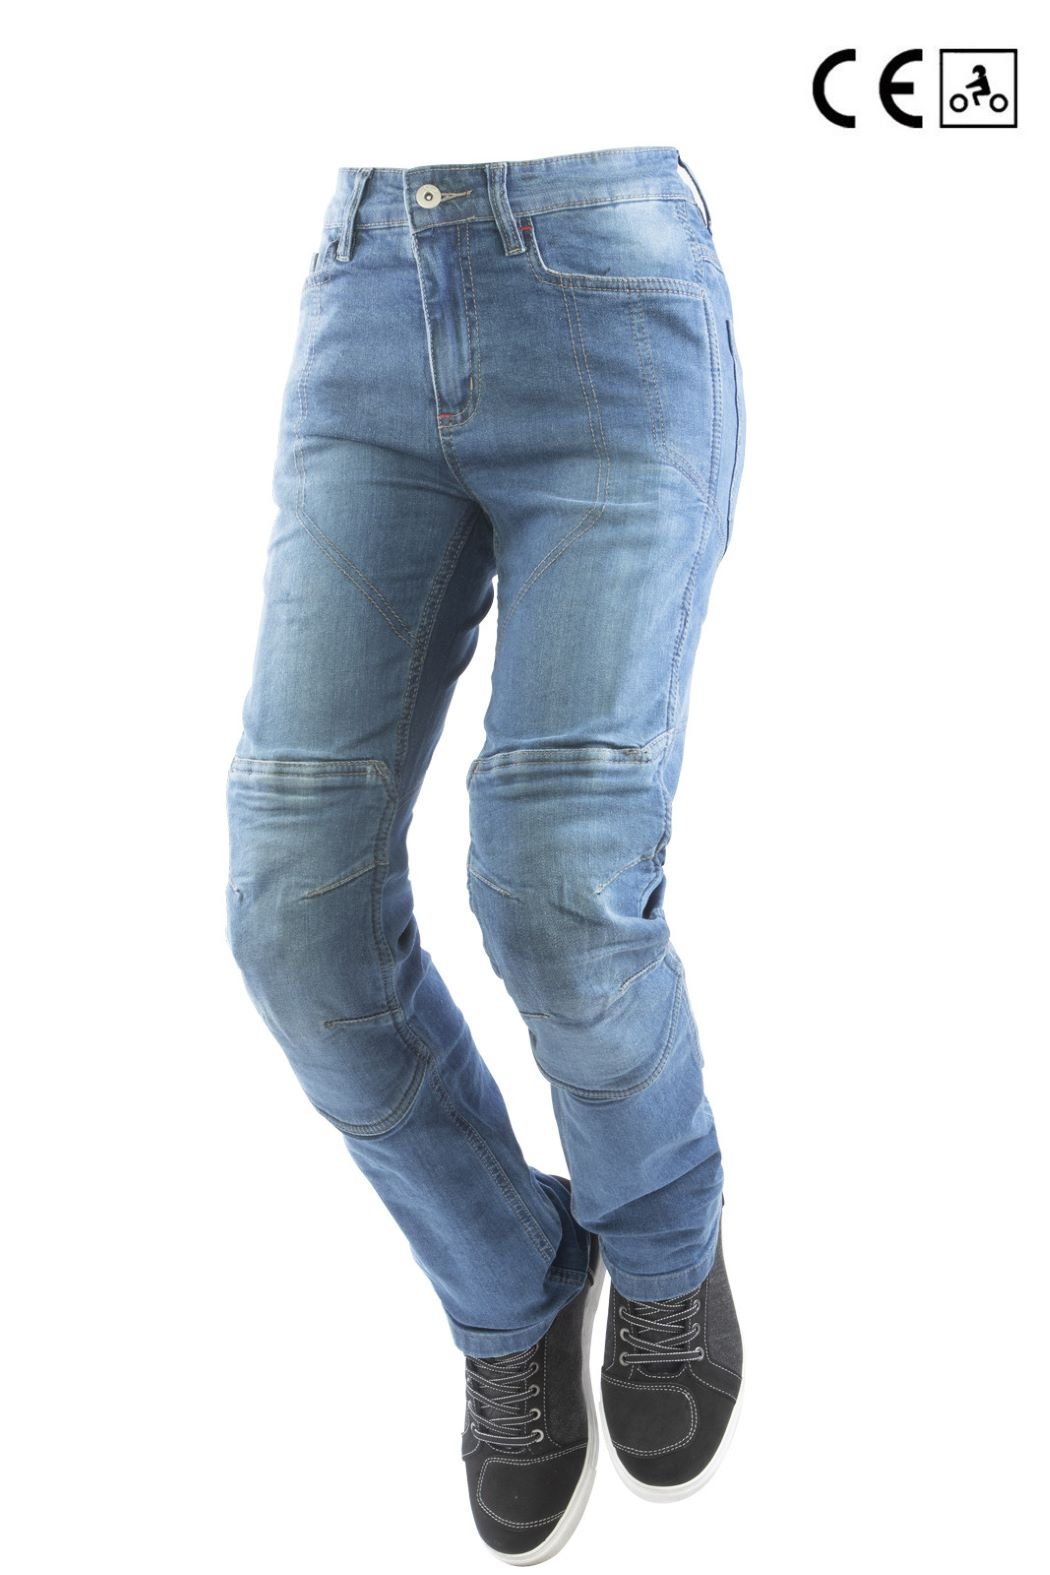 Jeans Vejle DAME kevlar | CE godkendt beskyttelse